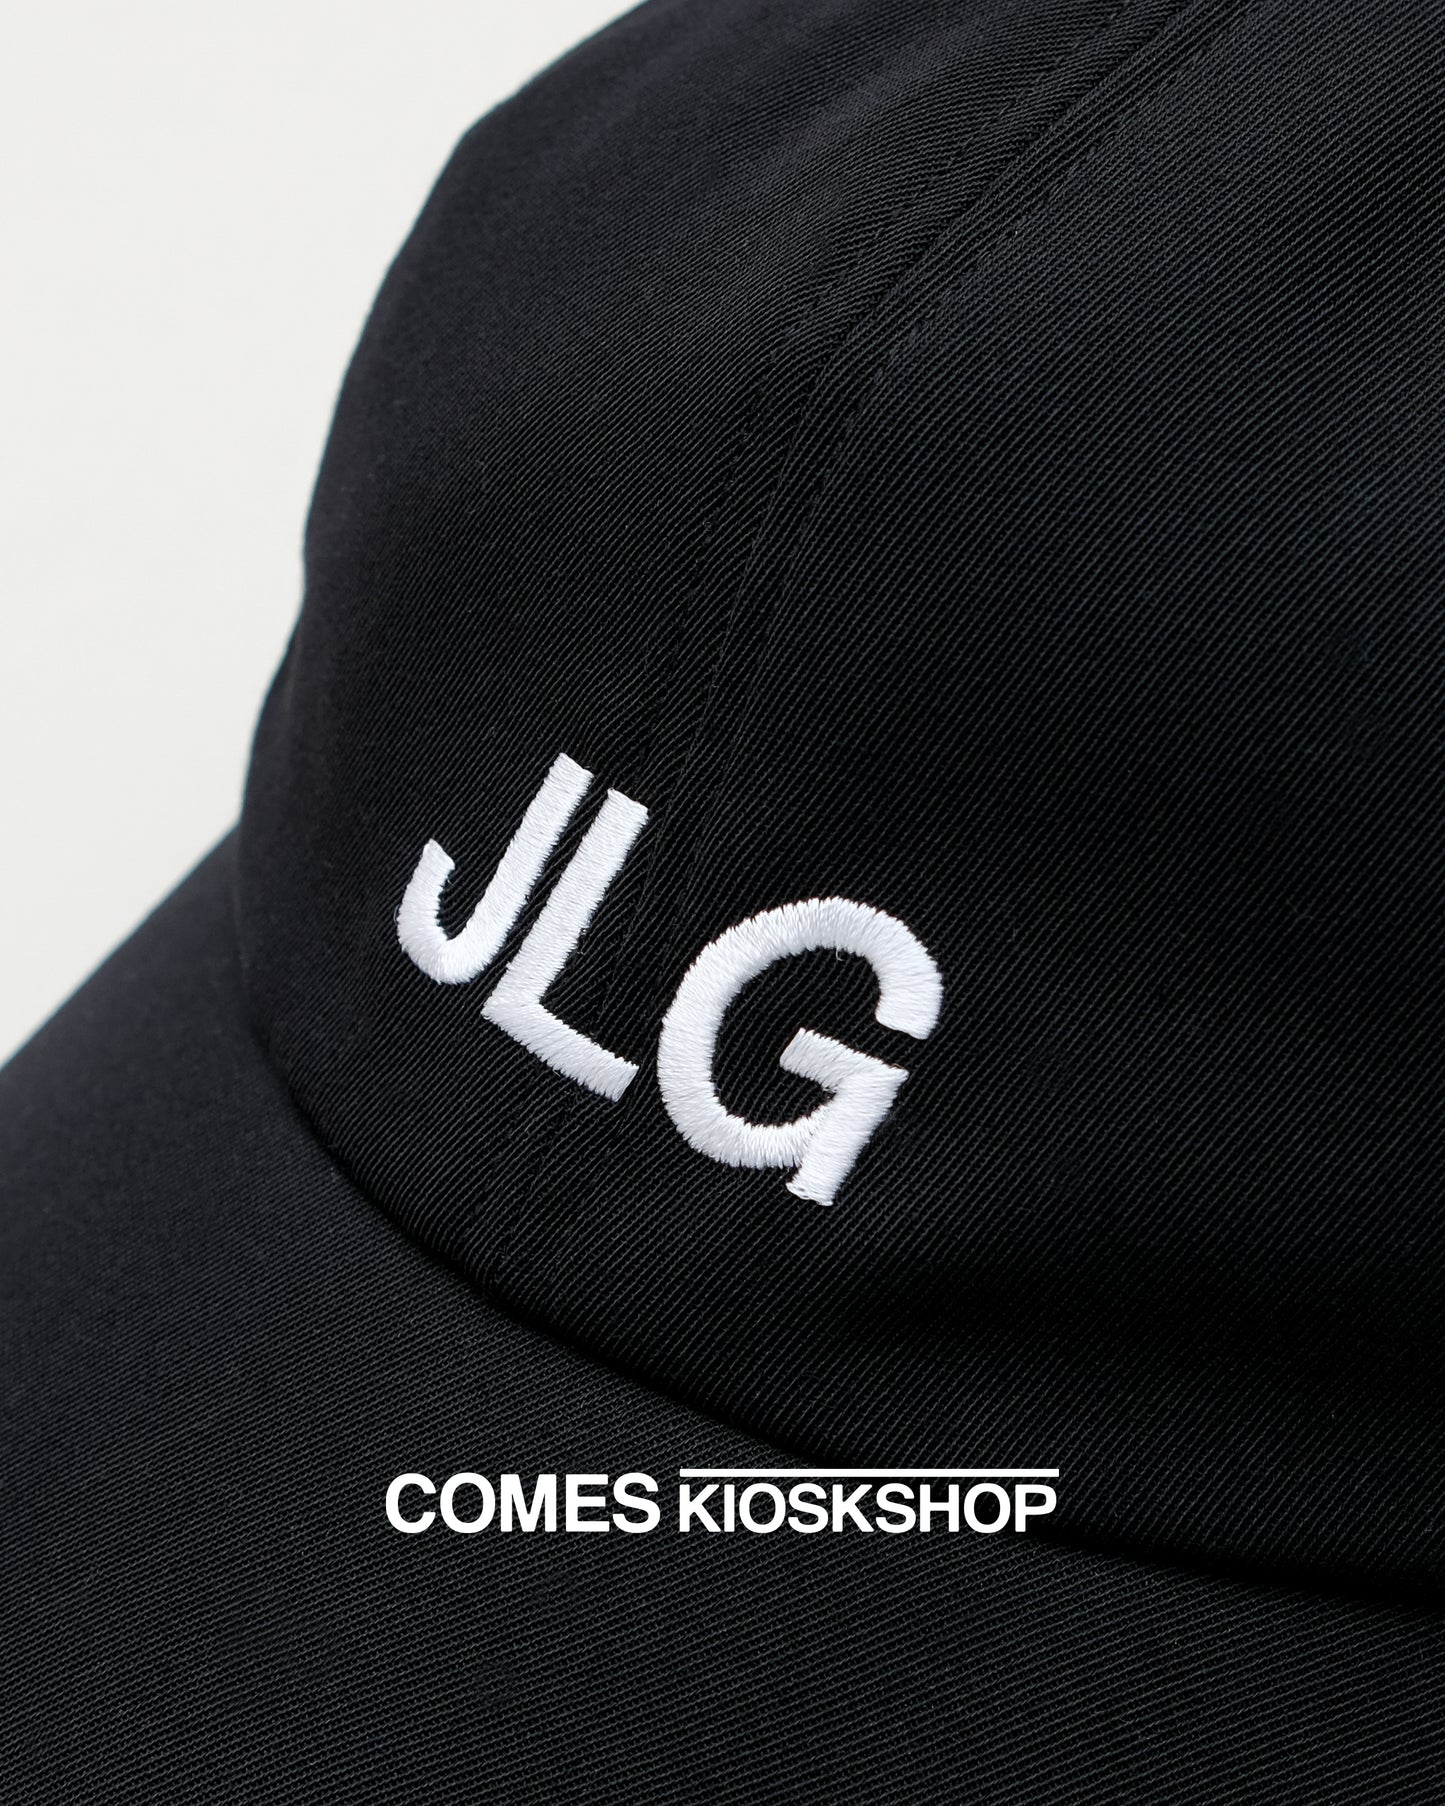 JLG CAP